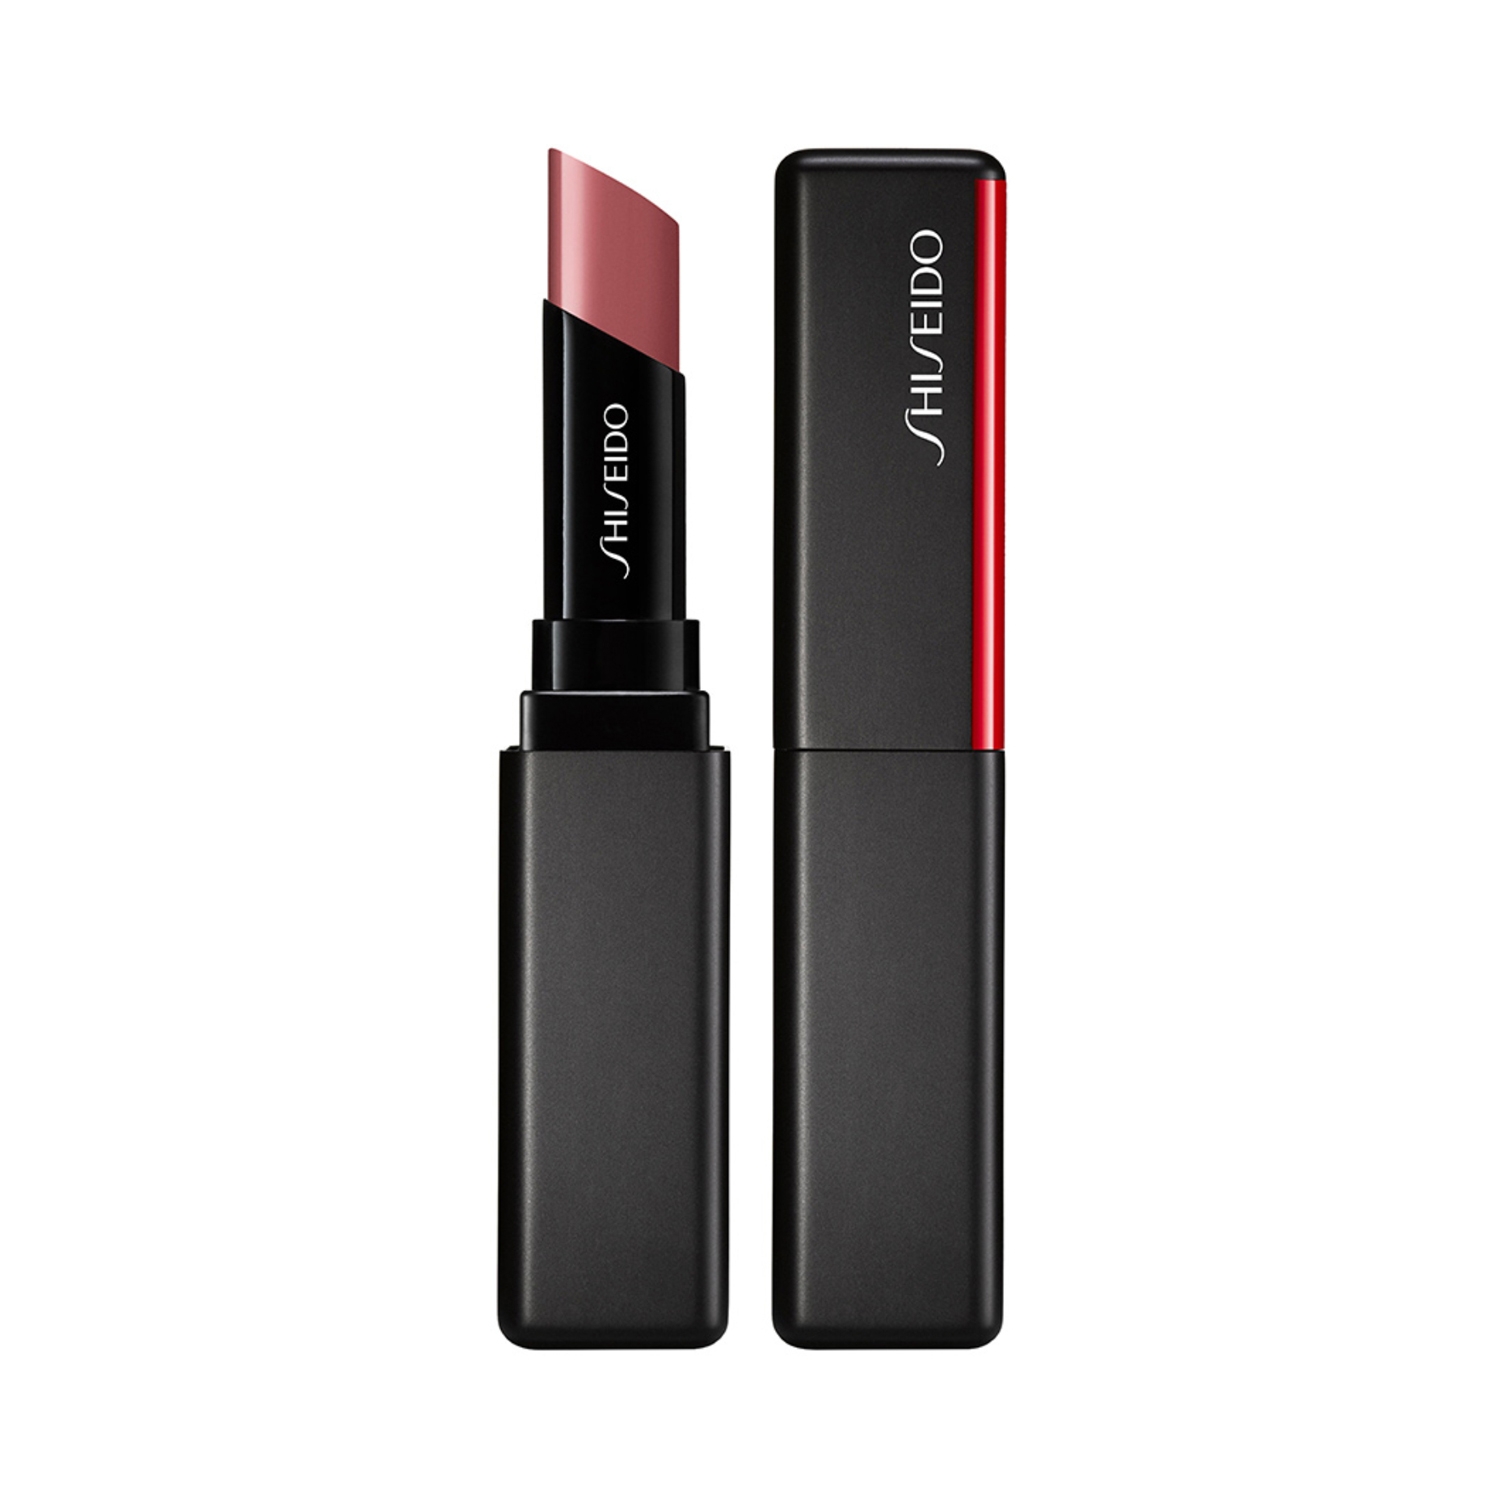 Shiseido | Shiseido VisionAry Gel Lipstick - 202 Bullet Train (1.6g)